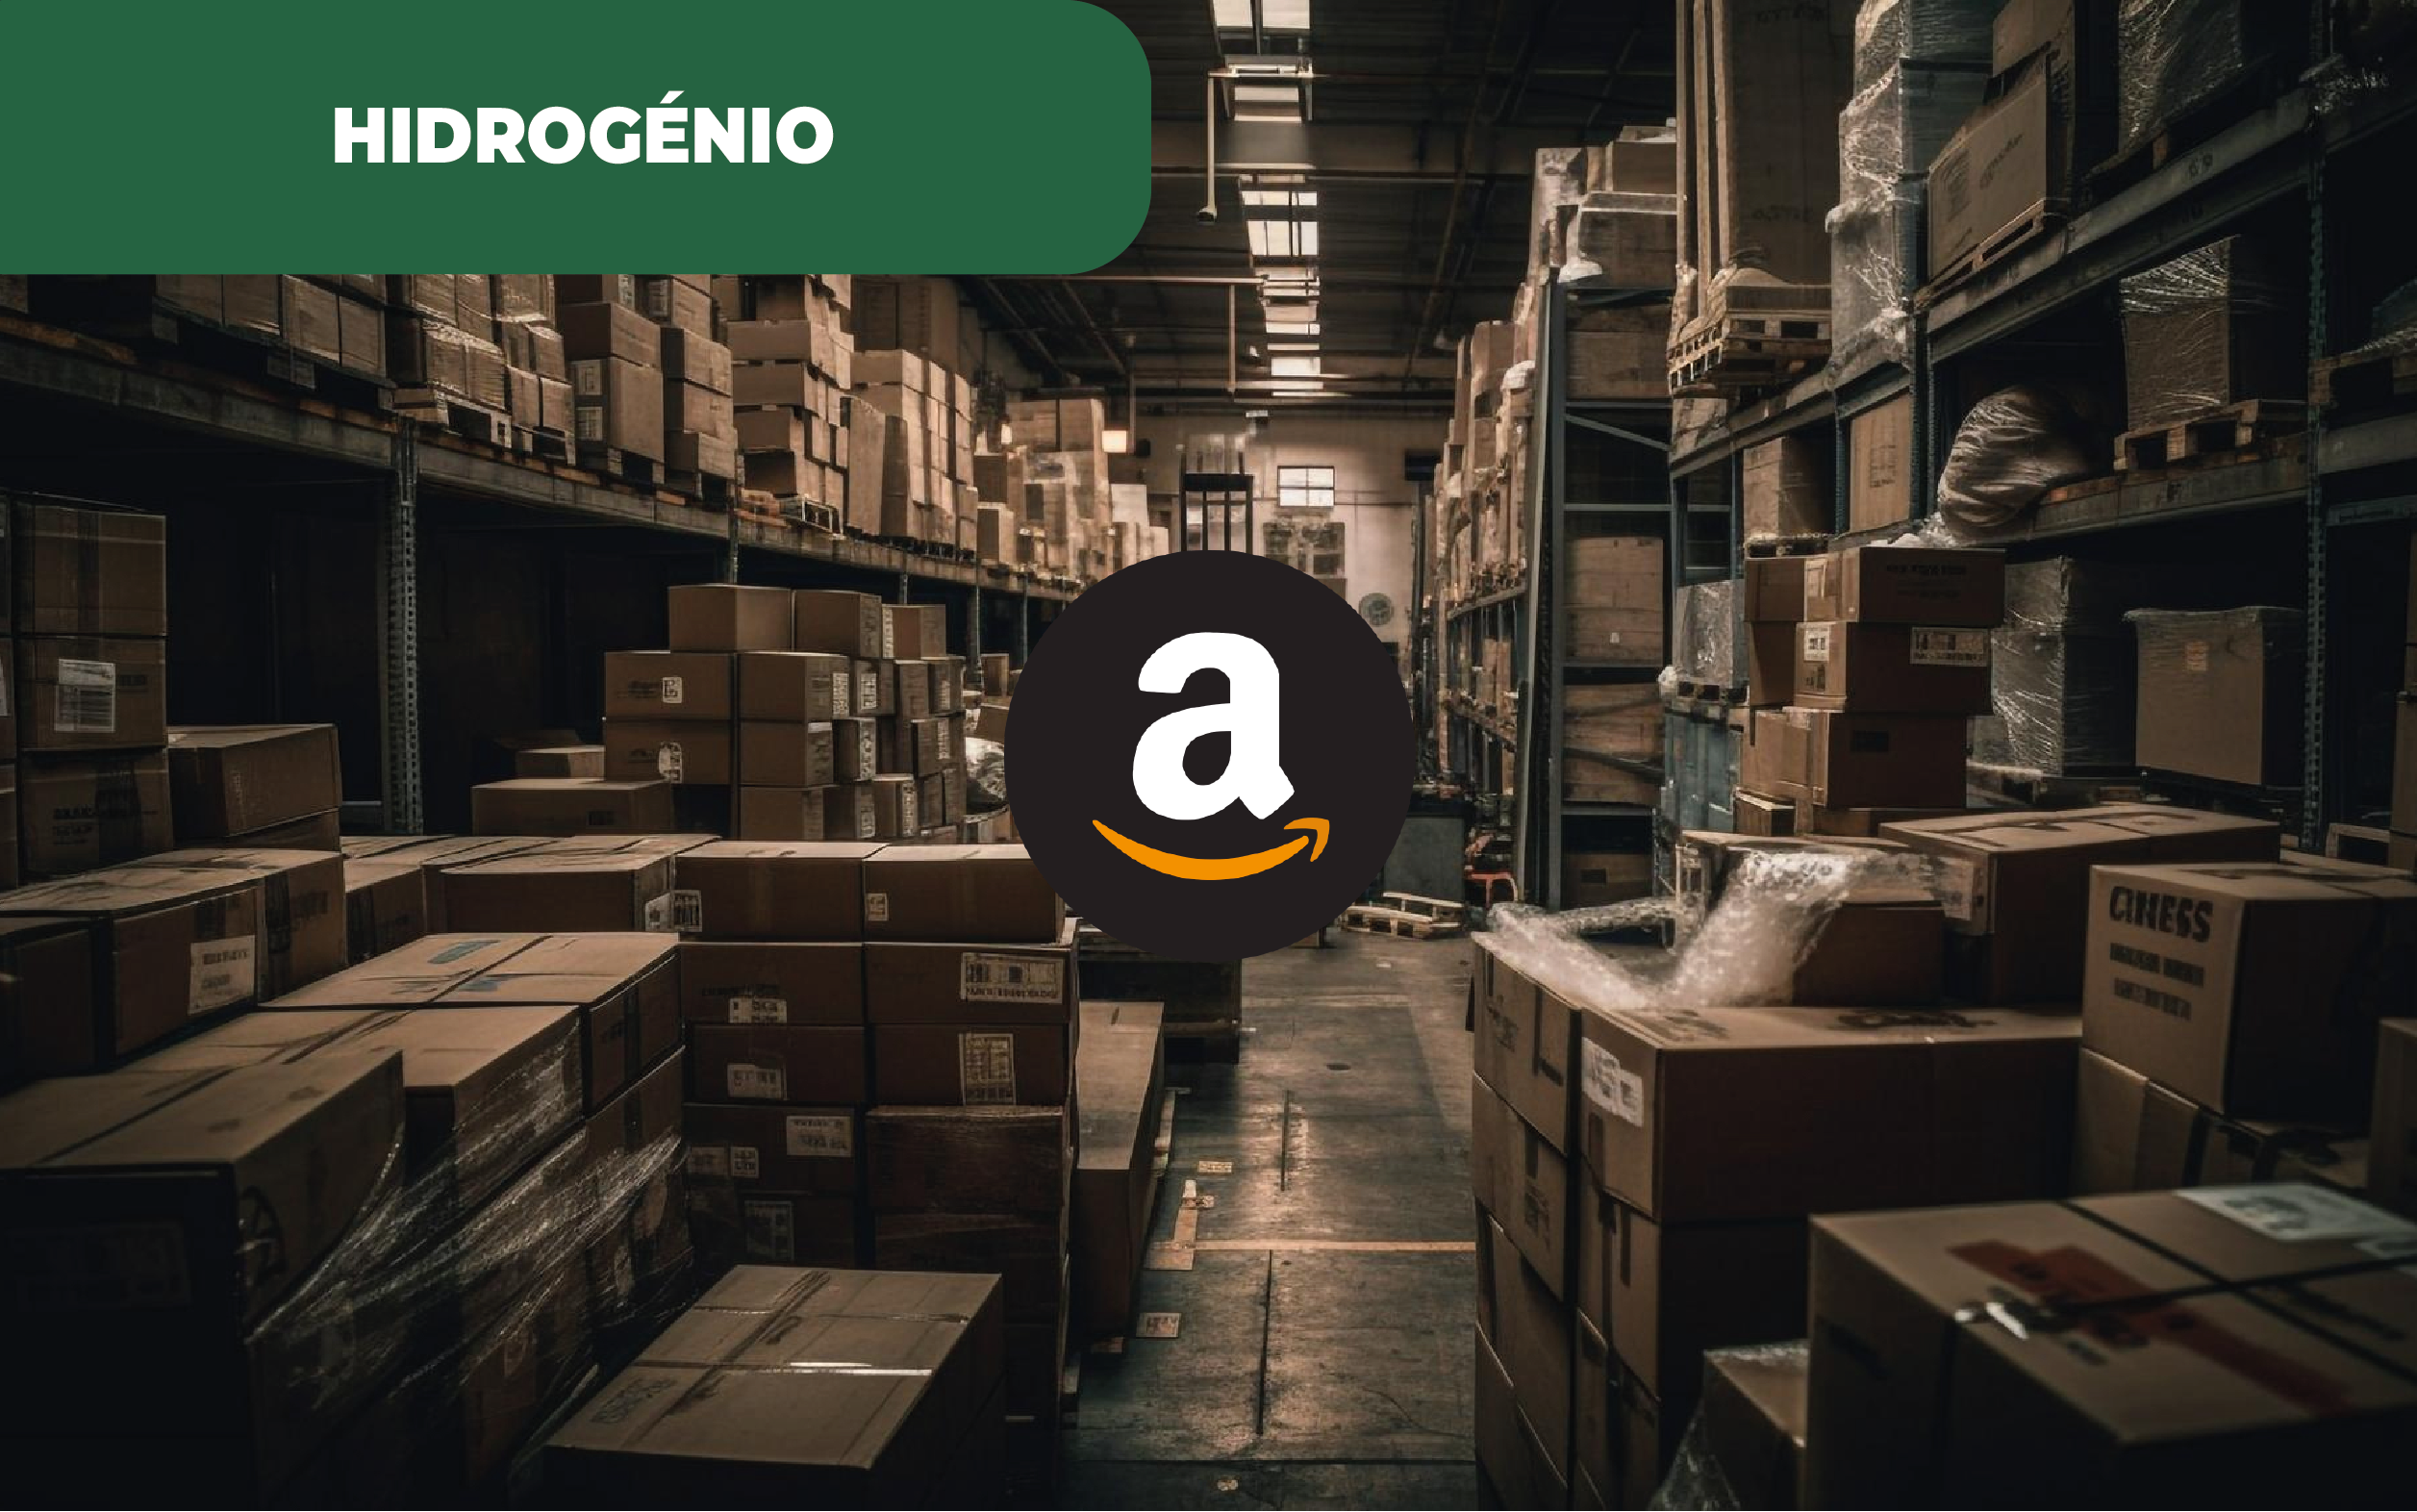 Imagem colorida de um armazém com caixotes e caixas, aludindo à Amazon. A Amazon produz hidrogénio com a ajuda da empresa Plug Power, para a descarbonização atual das suas frotas de veículos pesados.